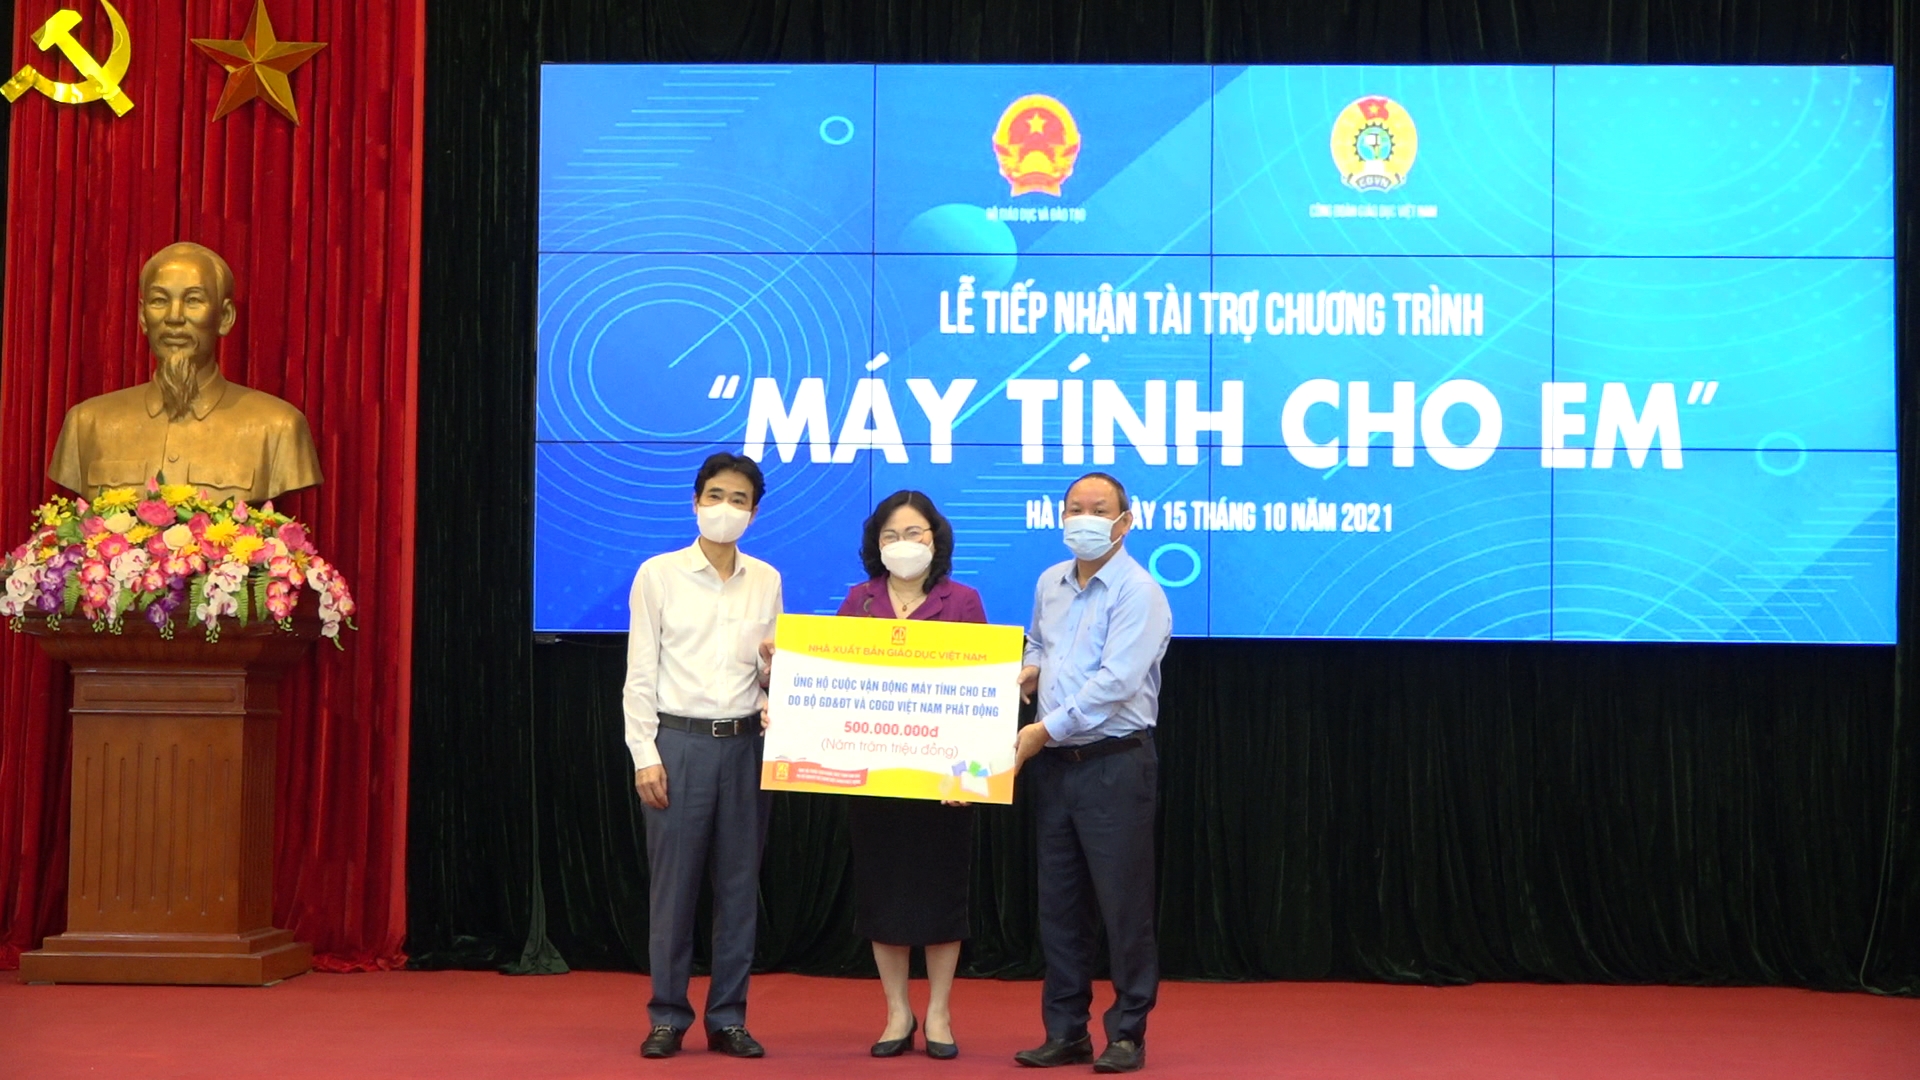 Nhà xuất bản Giáo dục Việt Nam ủng hộ Chương trình “Máy tính cho em